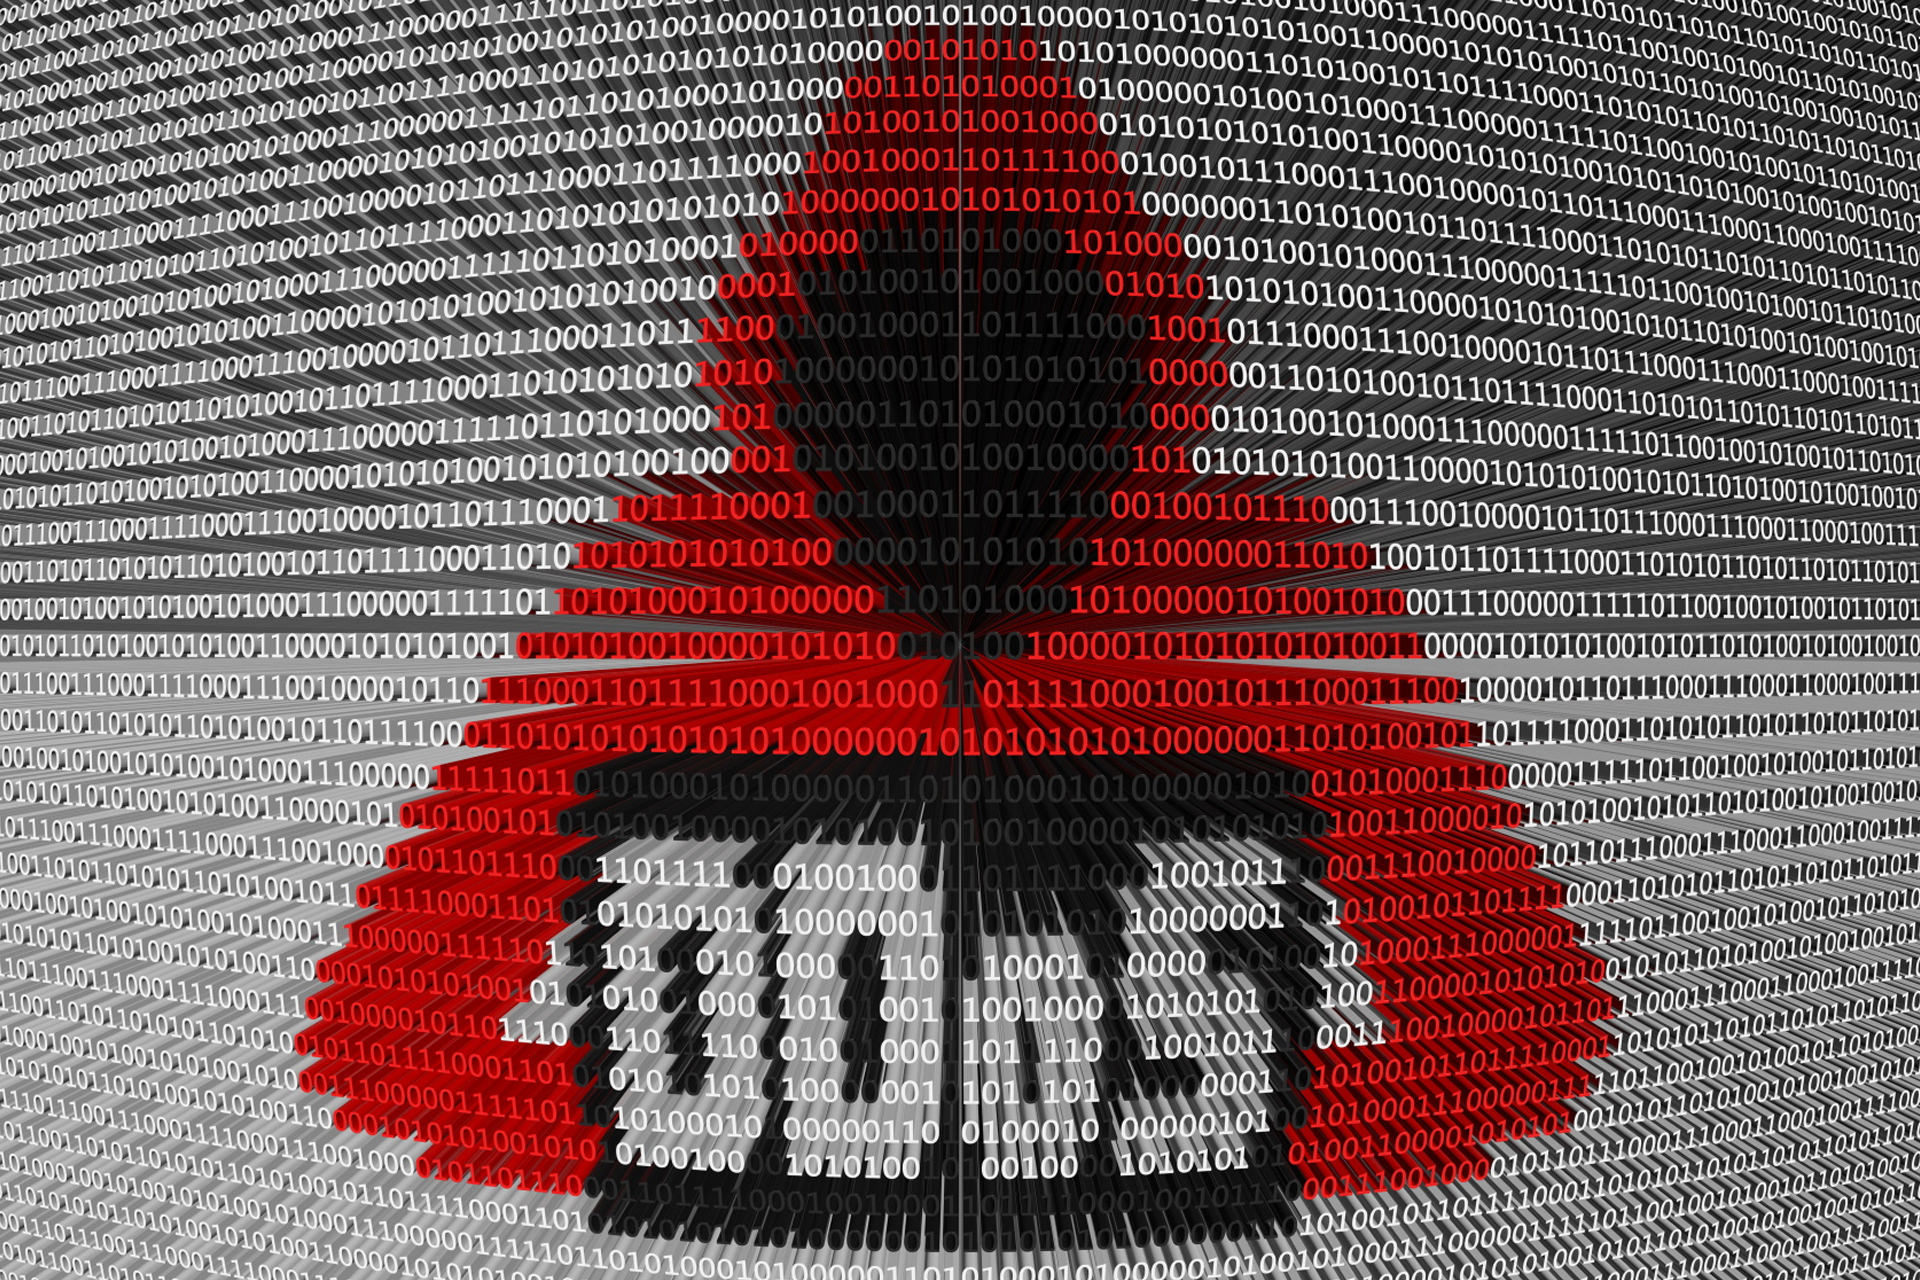 DoS در مقابل DDoS؛ تفاوت این دو نوع